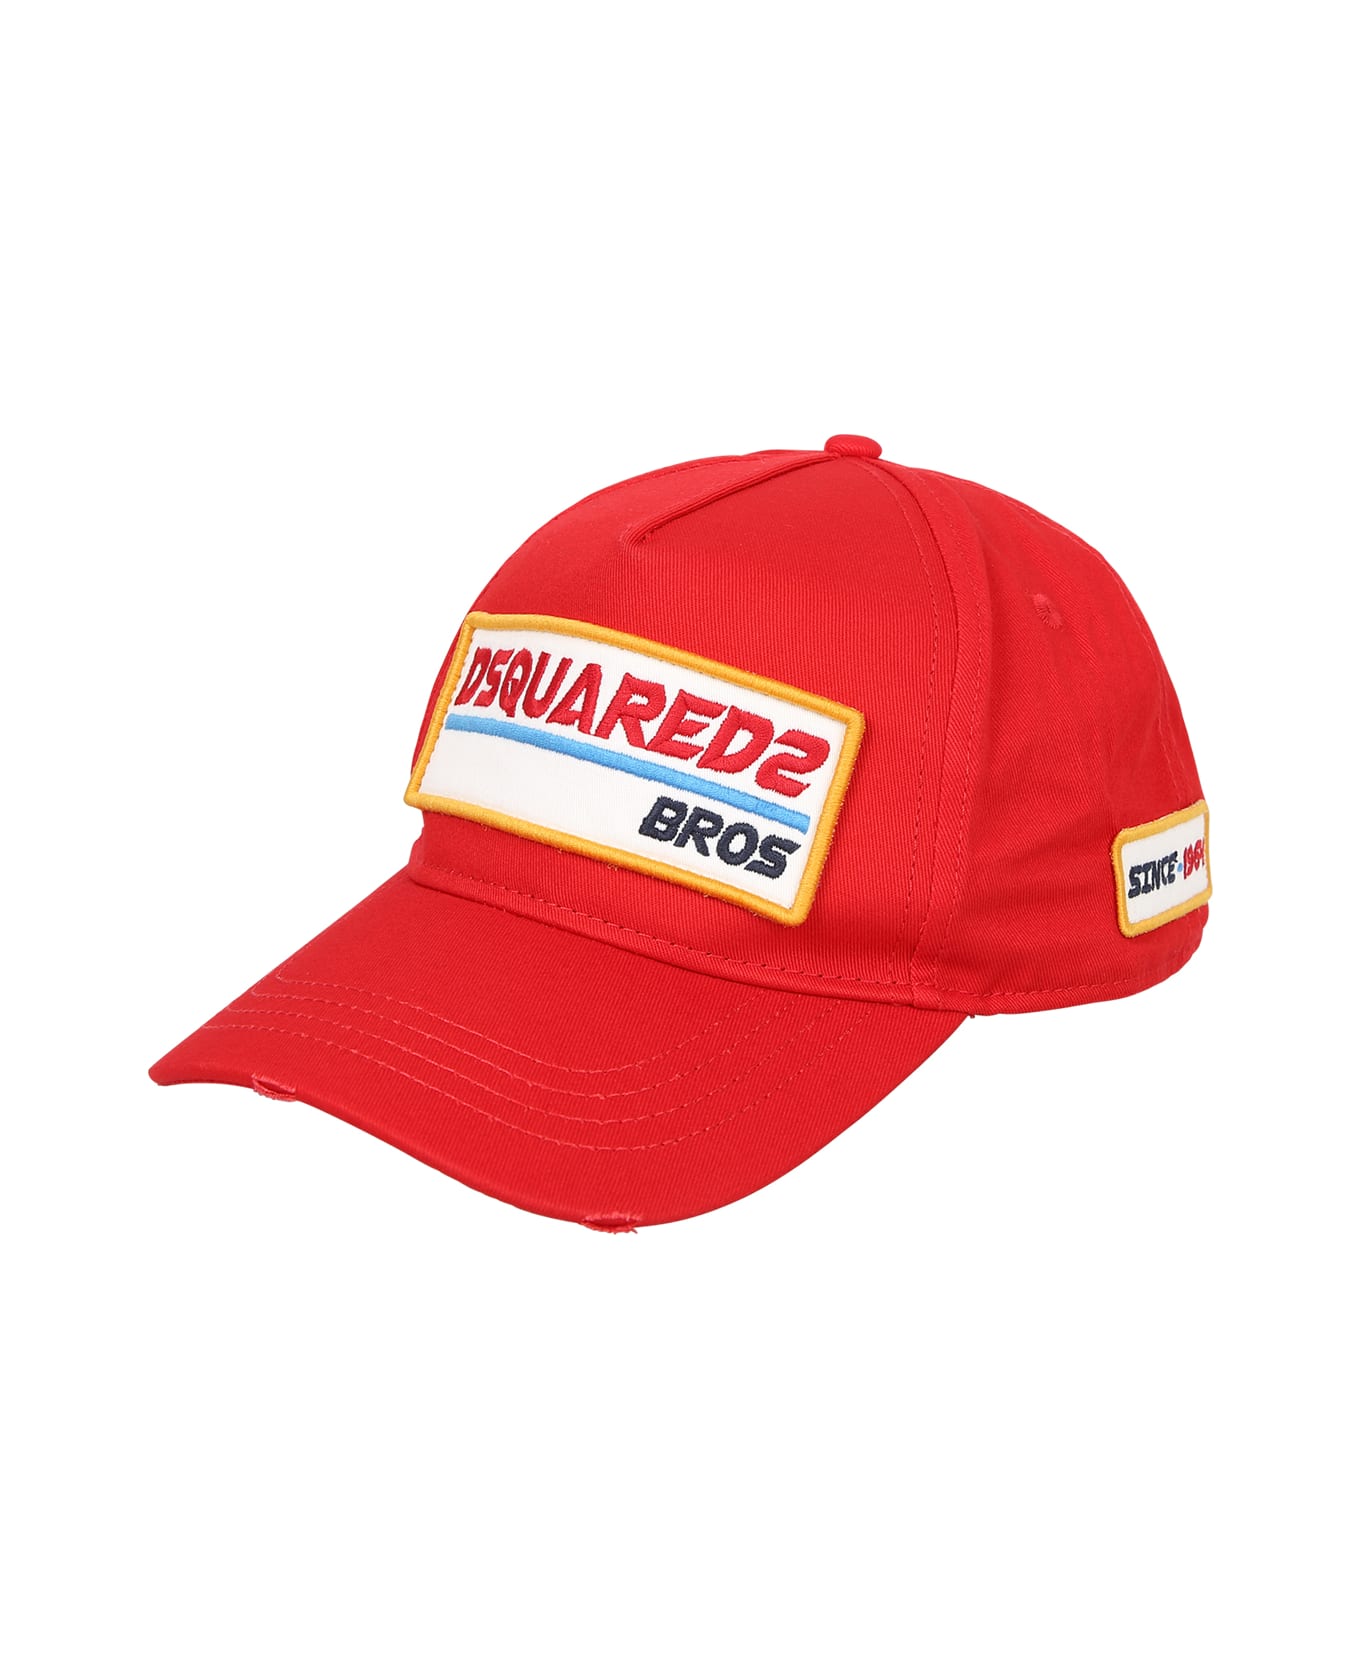 Dsquared2 Cappello Baseball Rosso/giallo - Red 帽子